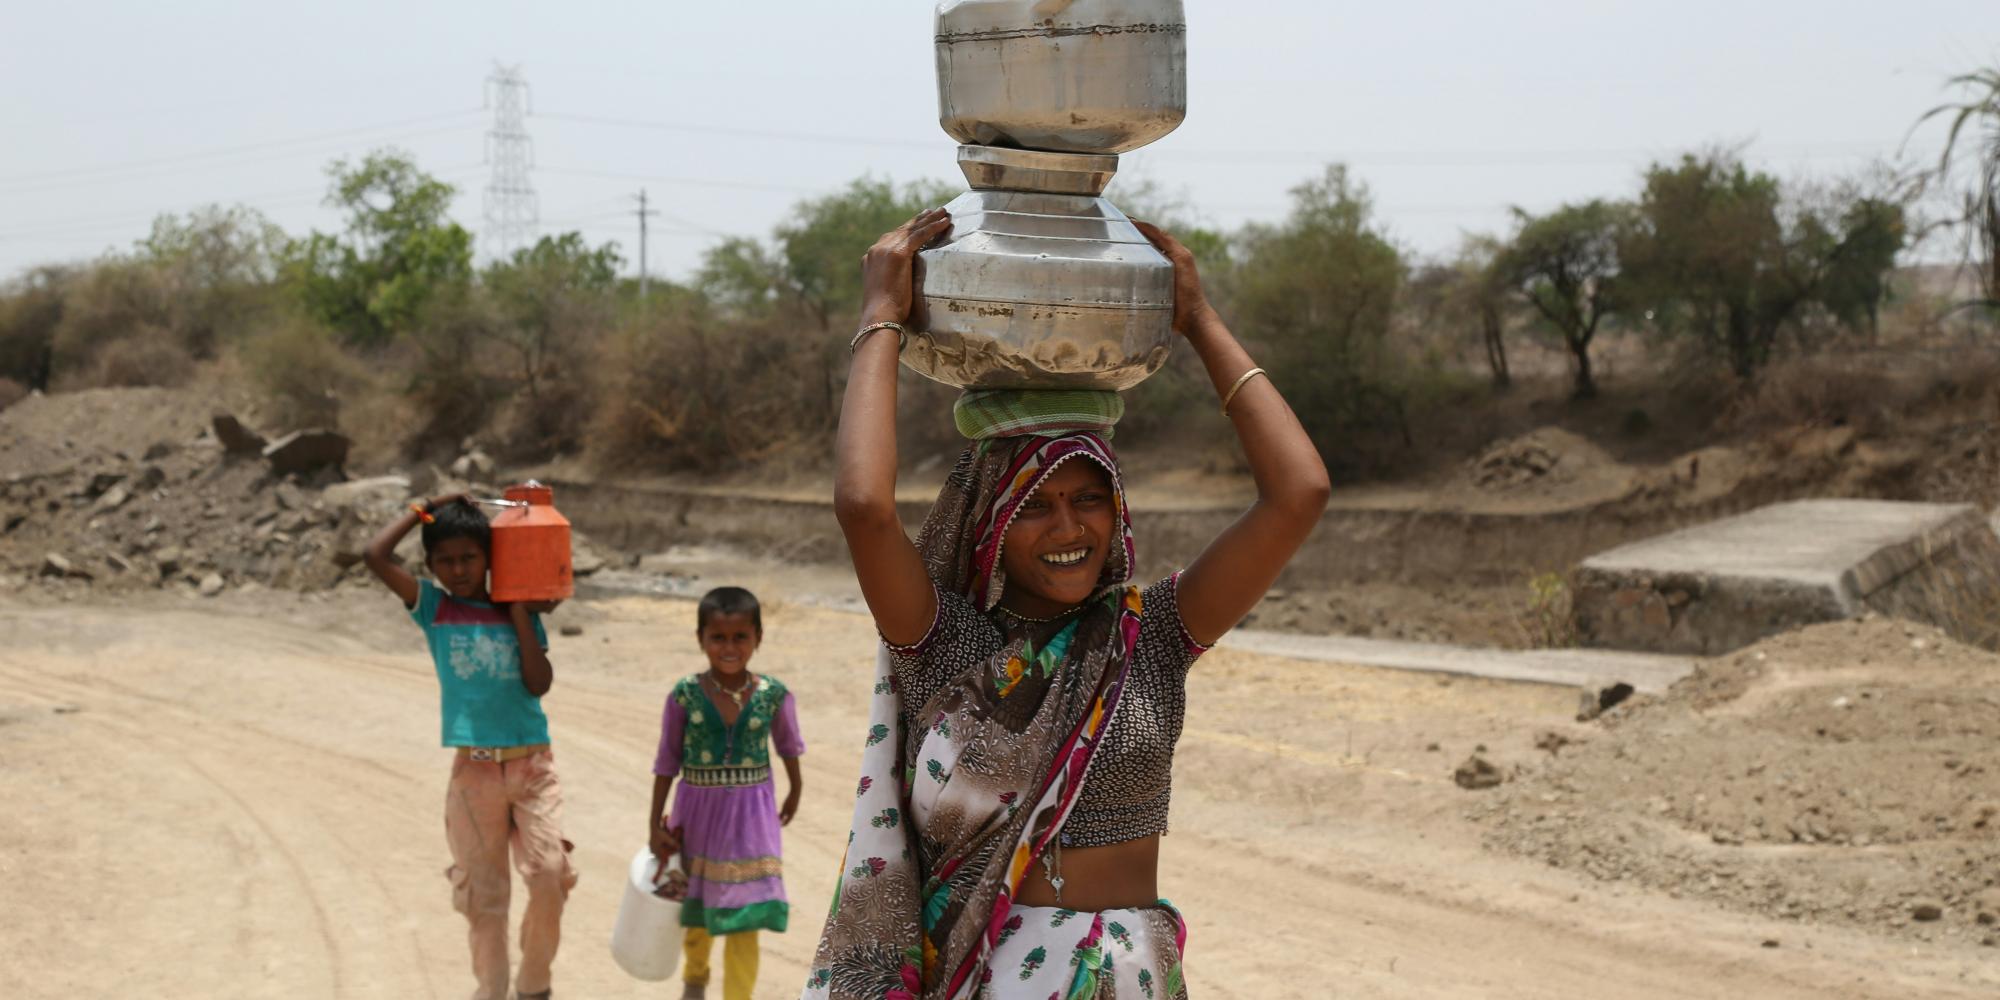 Frau in buntem Kleid, Wasserkanister aus Blech auf dem Kopf, auf einer staubigen Straße laufend, hinter ihr zwei Kinder, ebenfalls Wasserbehälter tragend. Foto von Gyan Shahane auf Unsplash